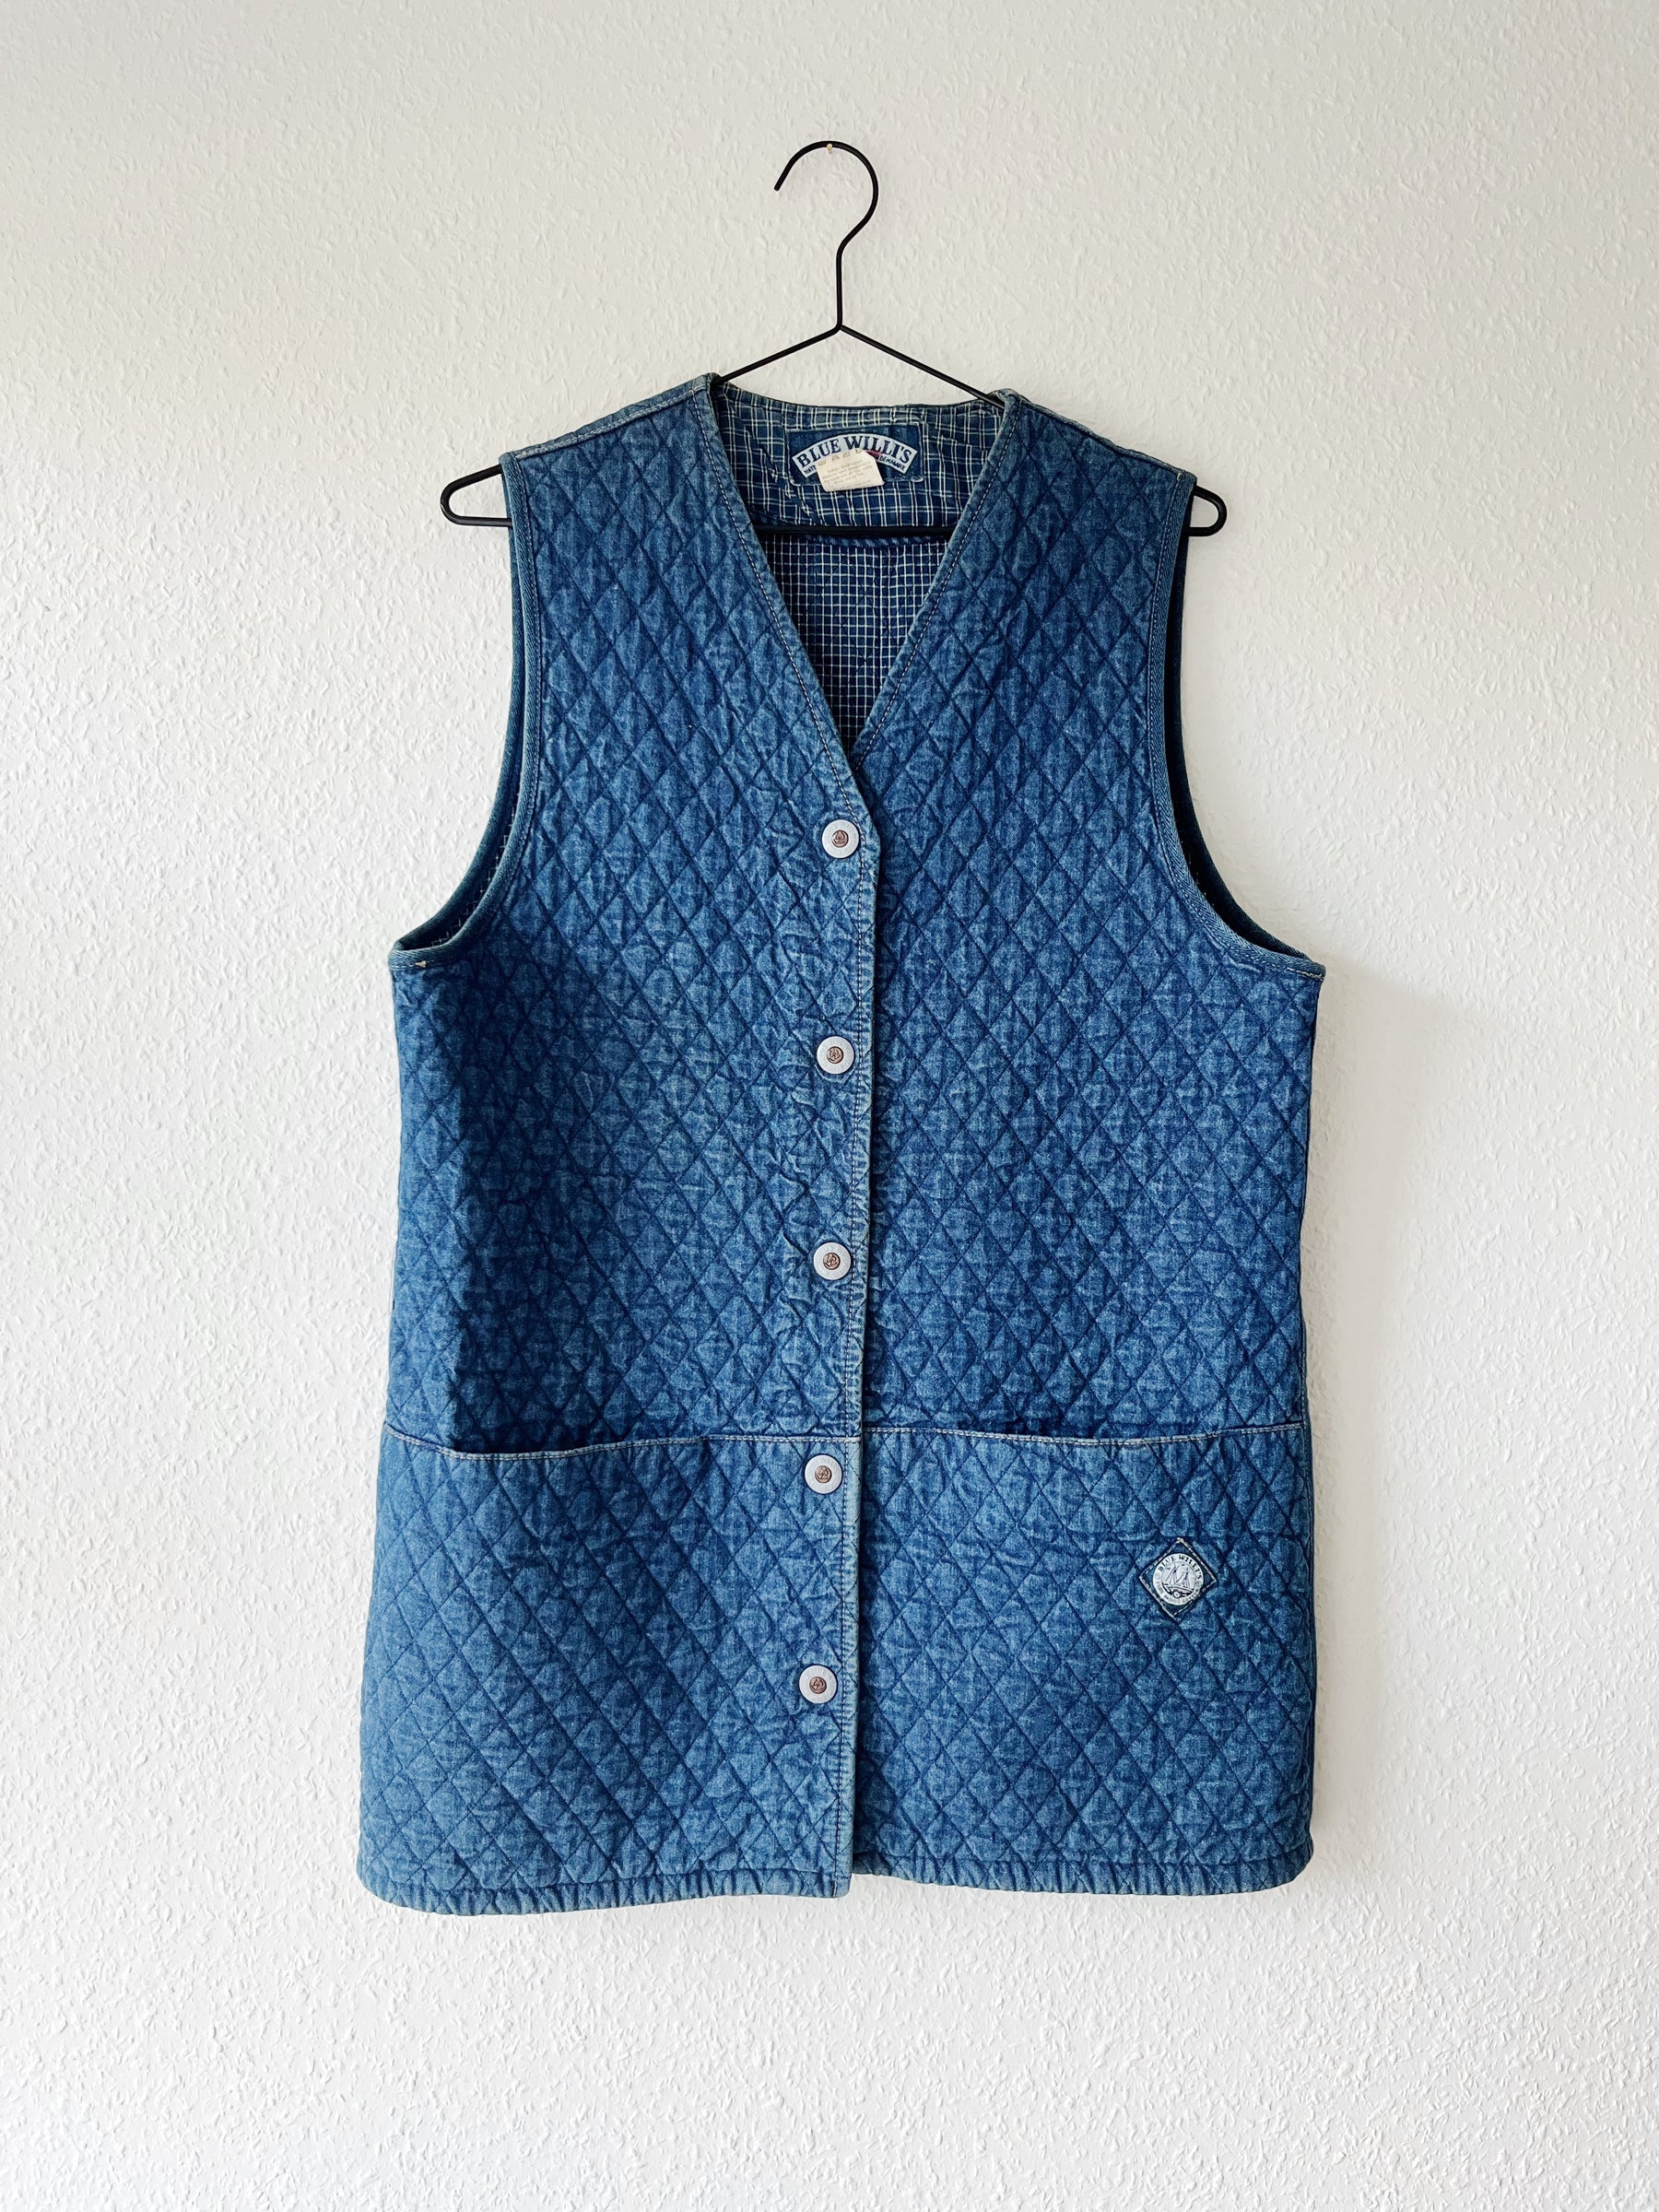 Blue Willi's vintage vest